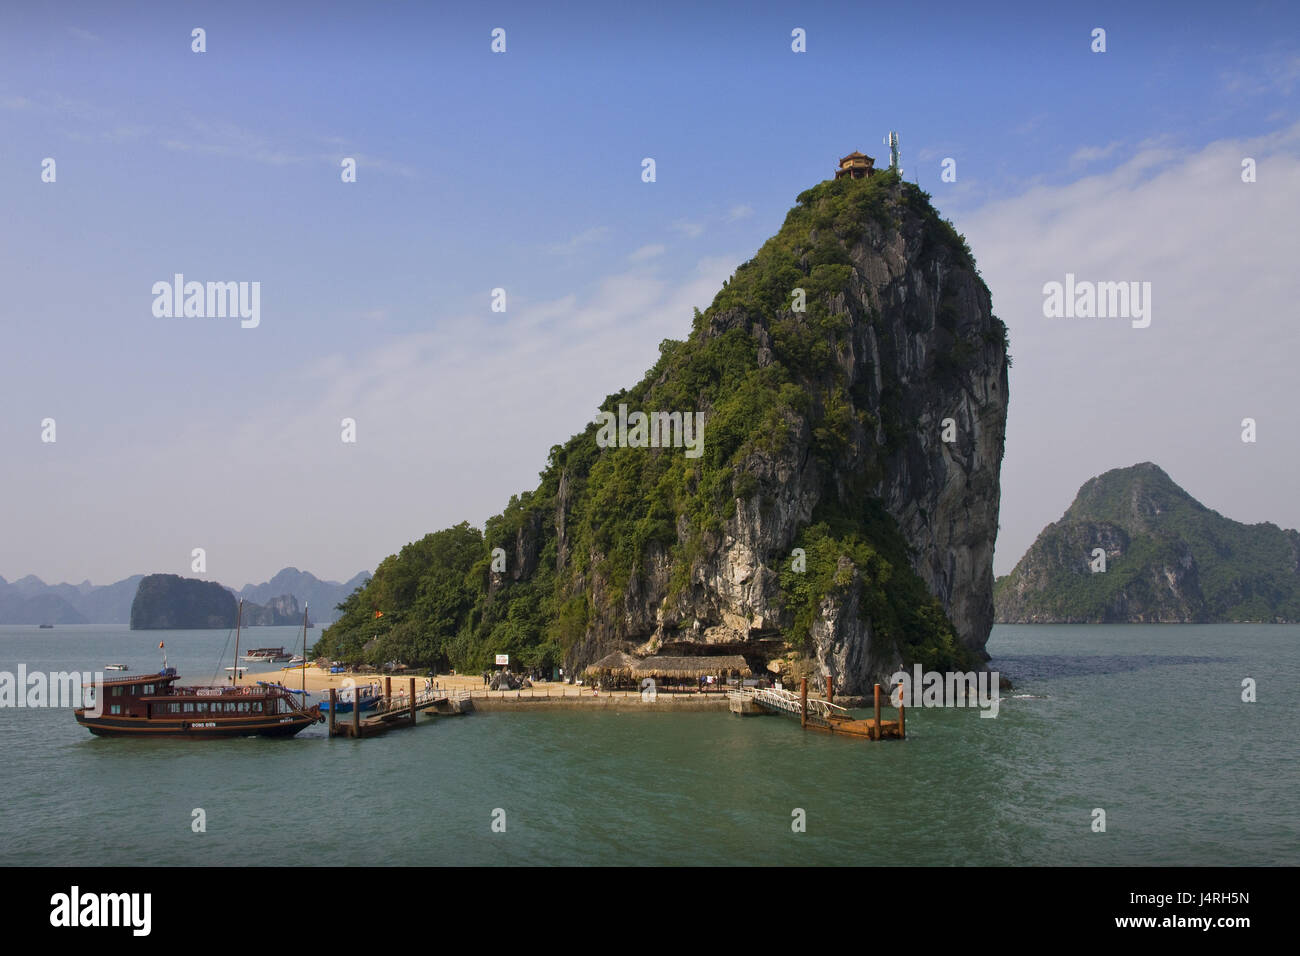 Il Vietnam, Halong Bay, bile isola, pontile, navi, Foto Stock